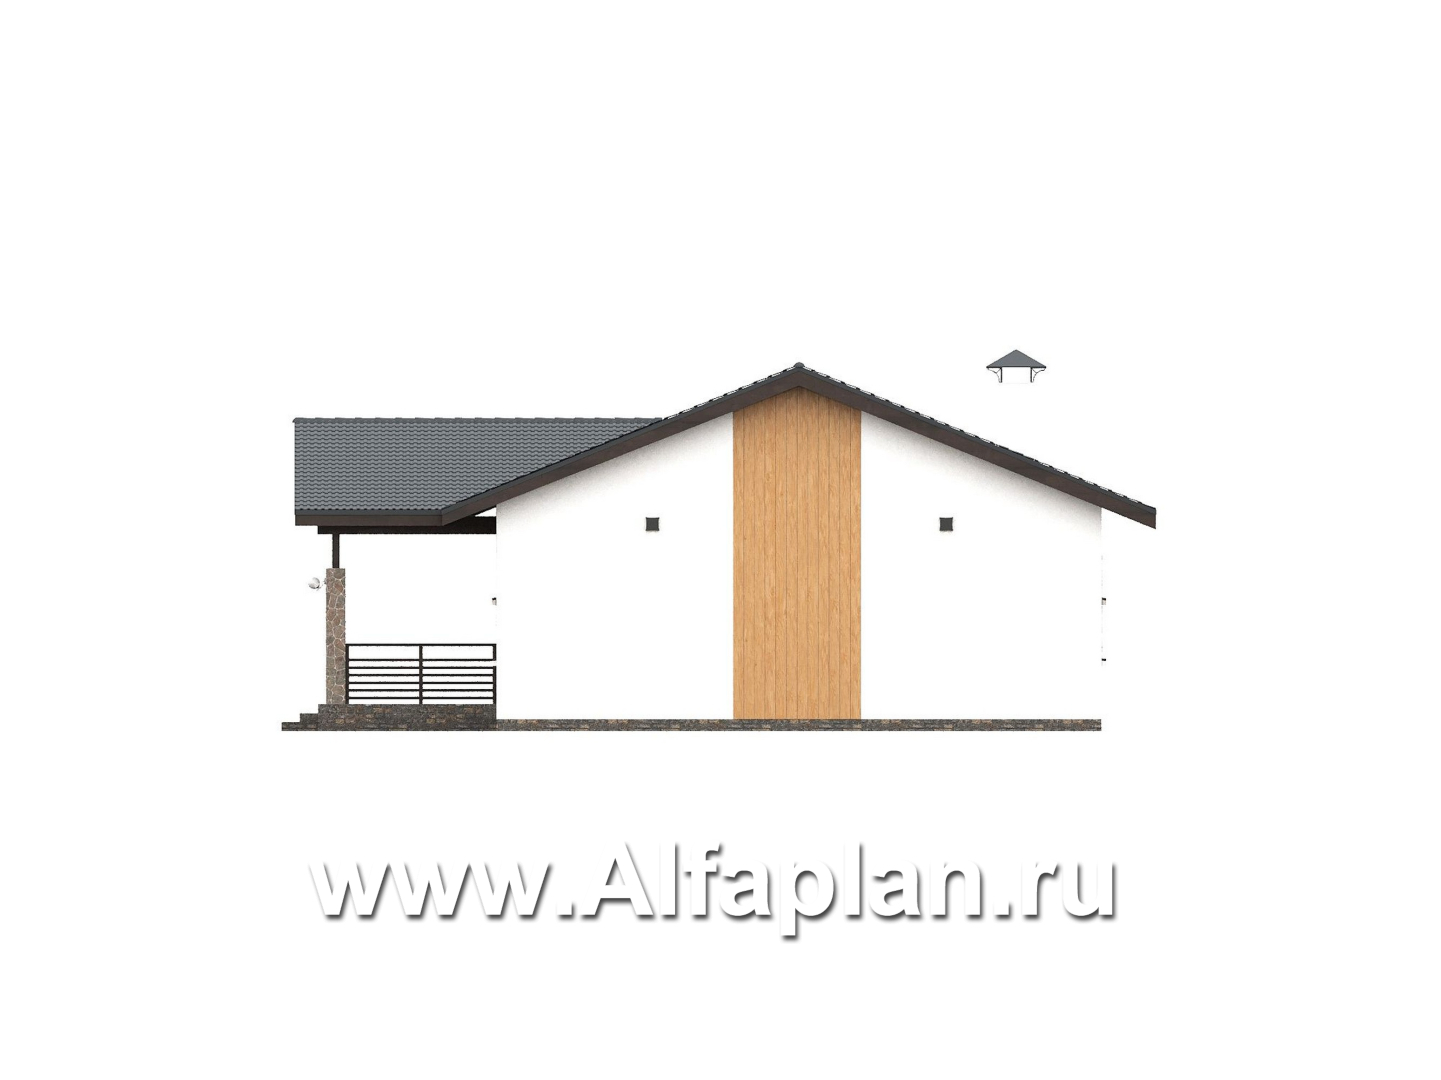 «Золотые поля» - проект одноэтажного дома, планировка мастер спальня и две детских, терраса со стороны входа - фасад дома